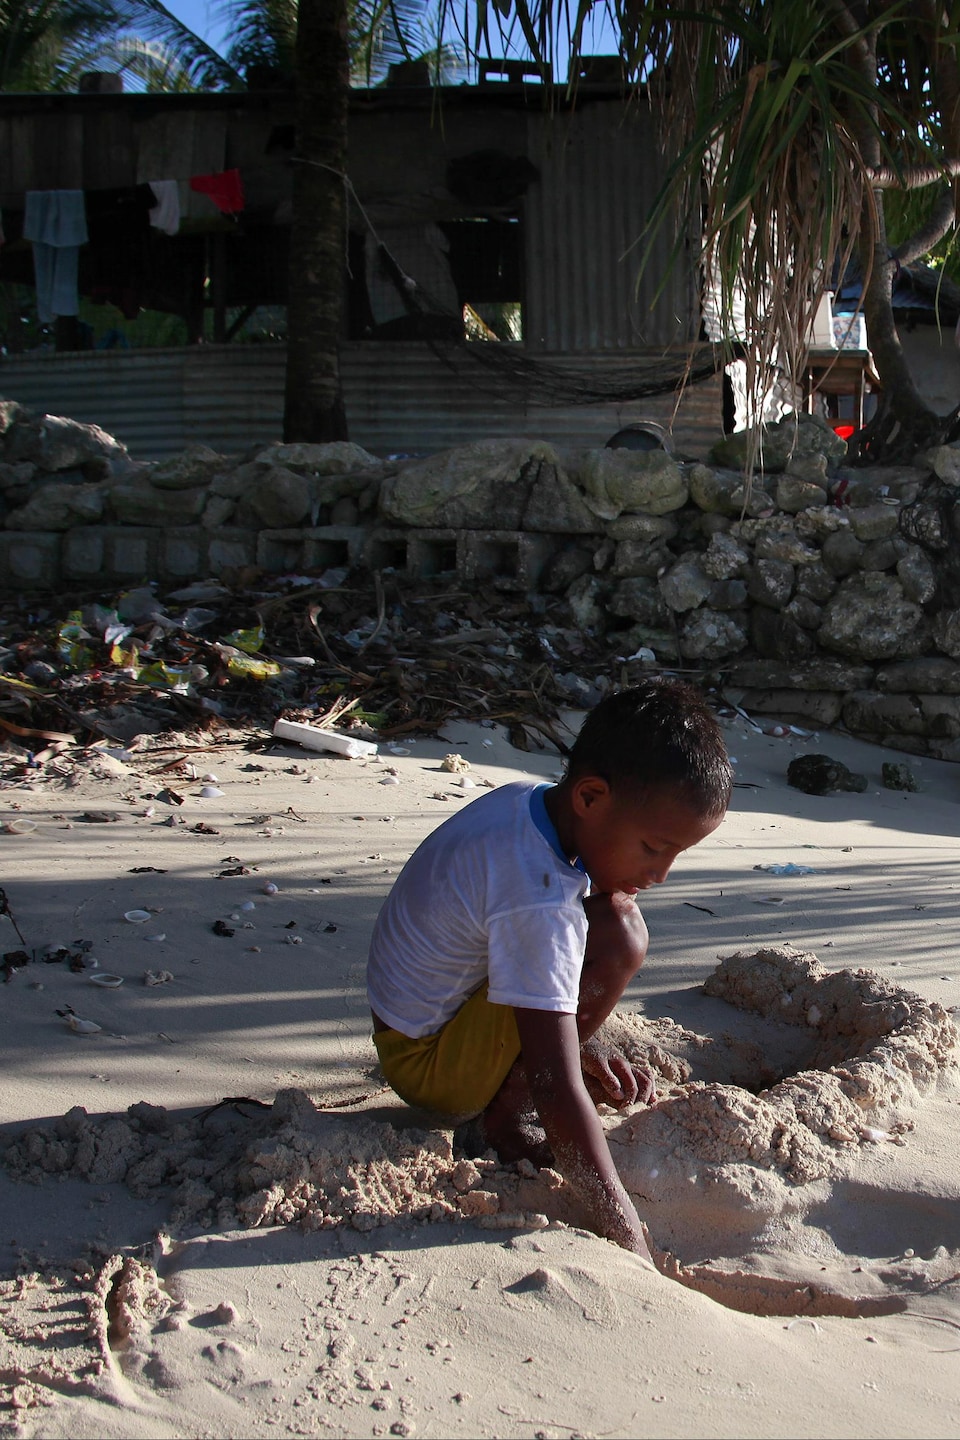 L'enfant joue dans le sable près de sa maison, qui est construite à côté de l'eau et entourée d'un muret de pierre.